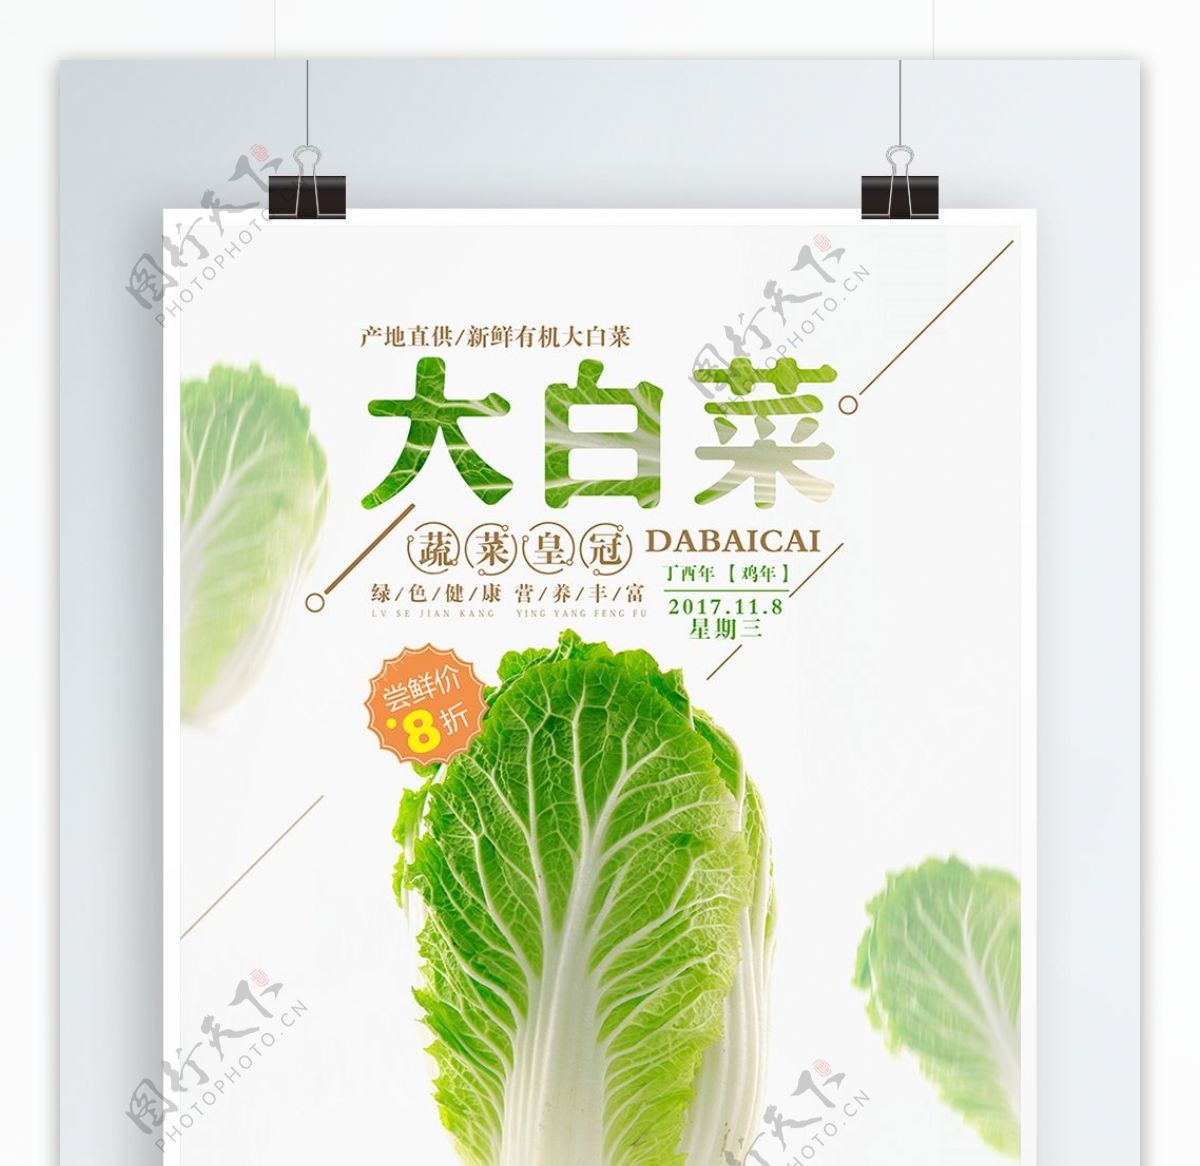 清新简约新鲜大白菜促销活动宣传海报设计